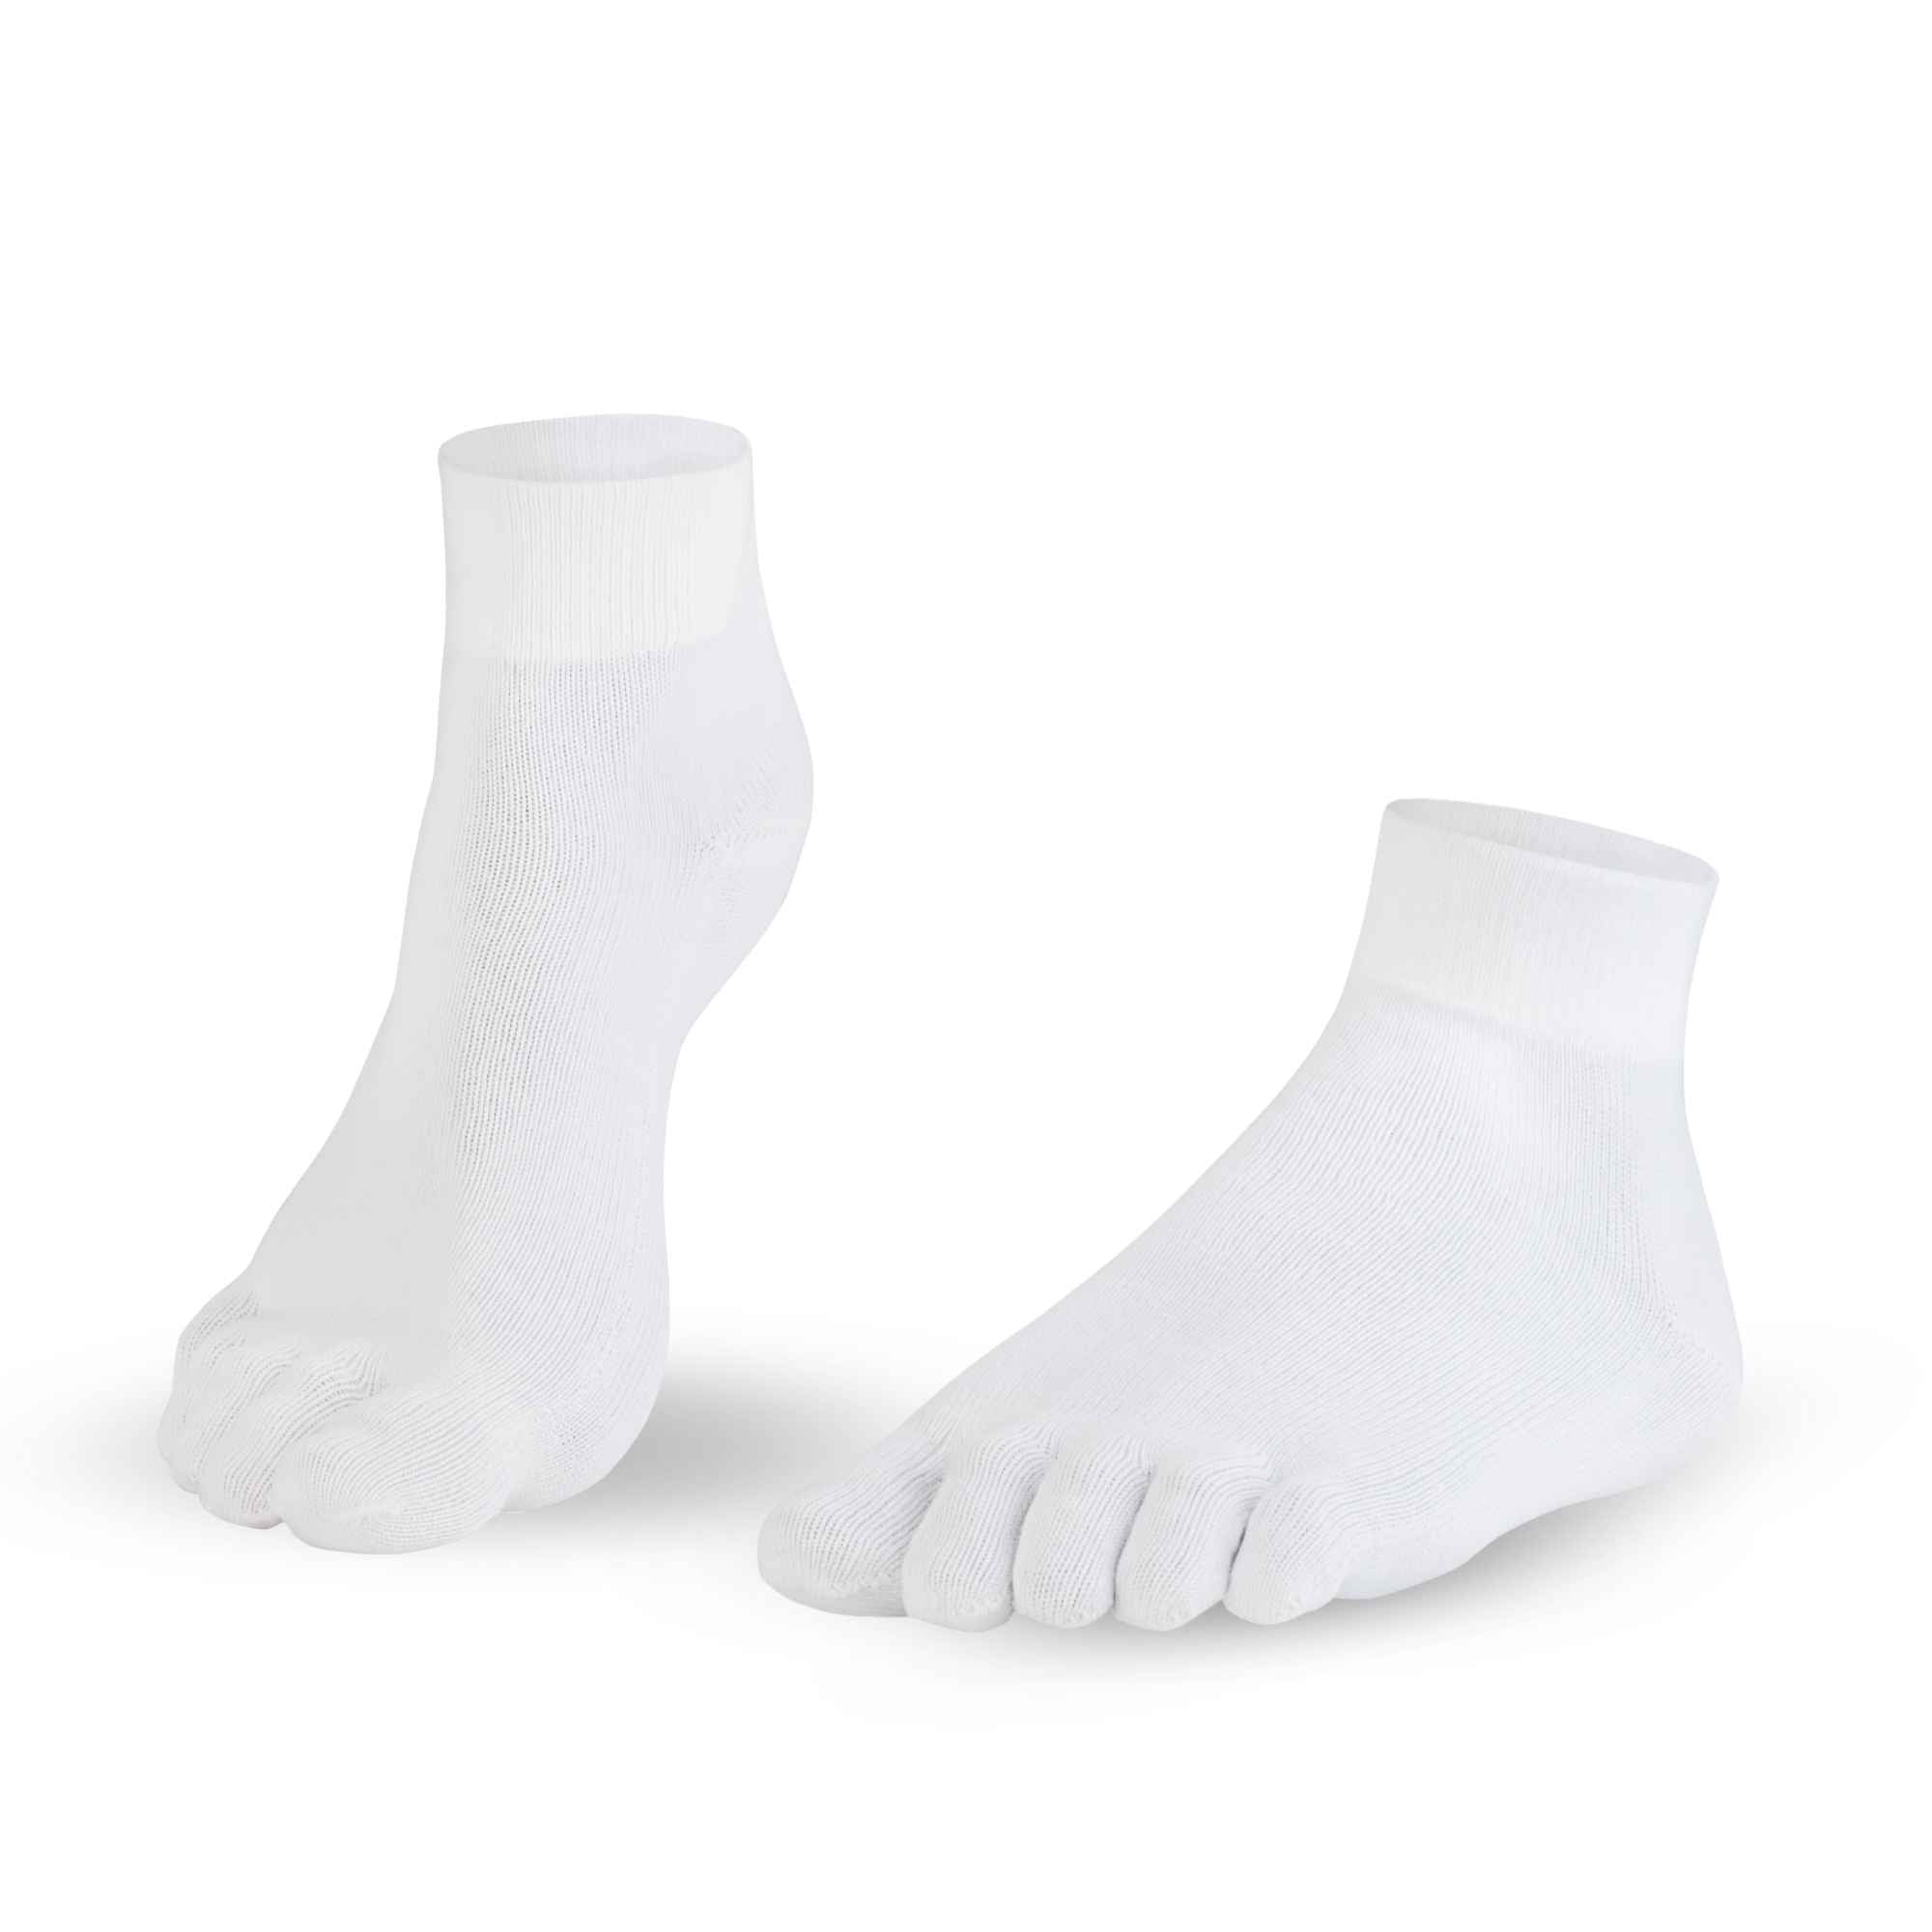 Knitido Dr. Foot Silver Protect® calze con dita con filo d'argento antimicrobico alla caviglia, colore bianco puro